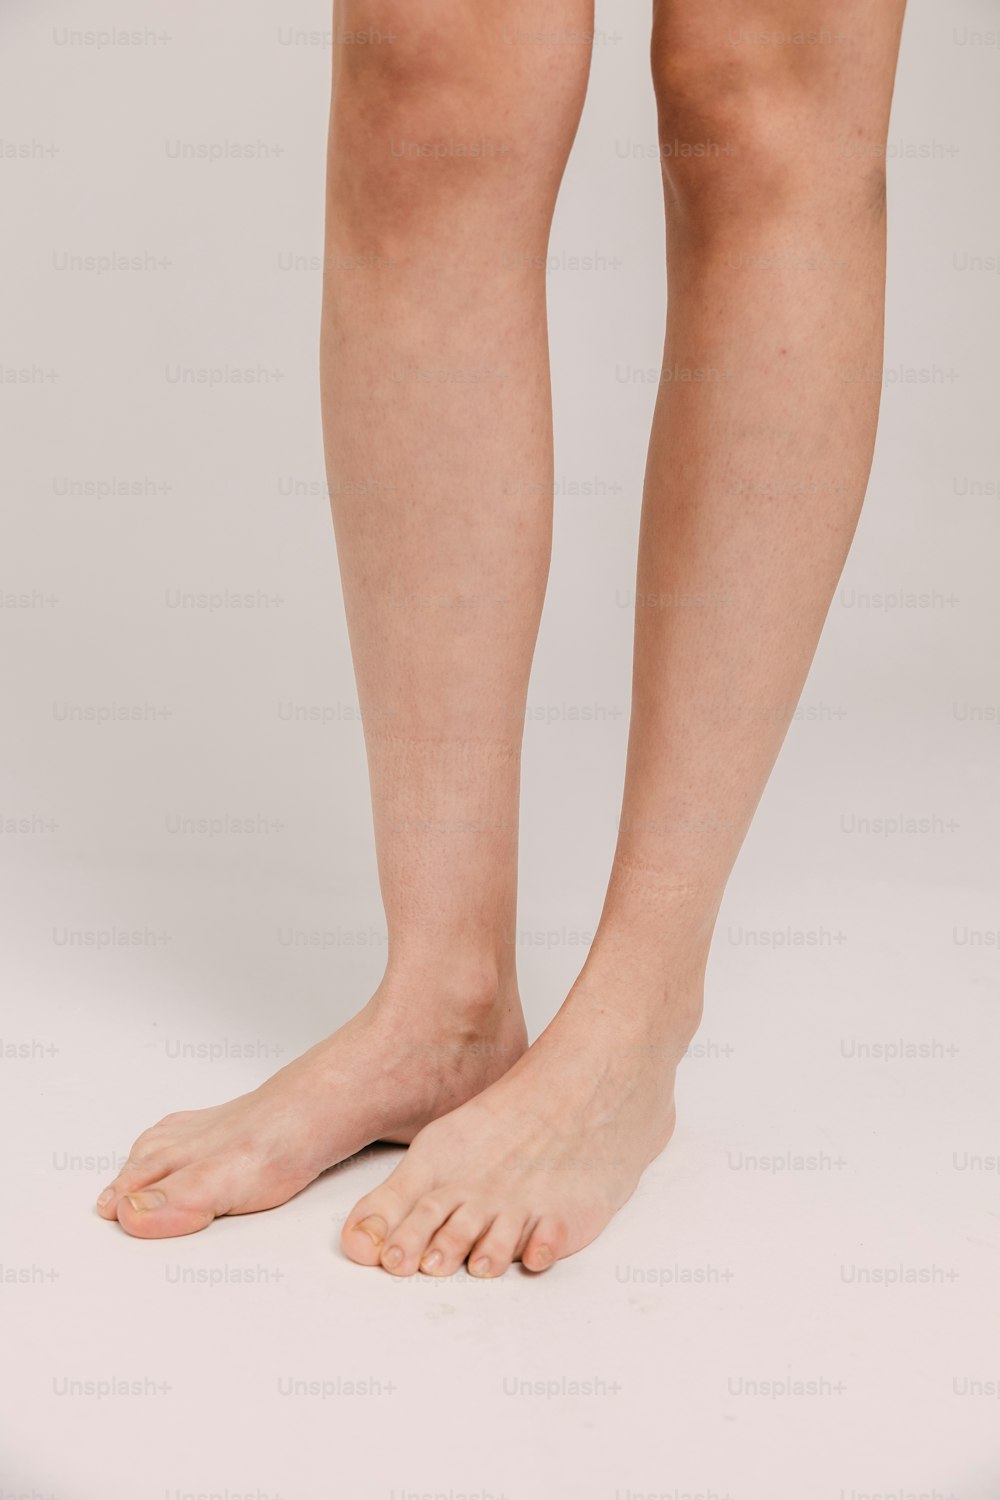 Vengono mostrate le gambe e le gambe nude di una donna